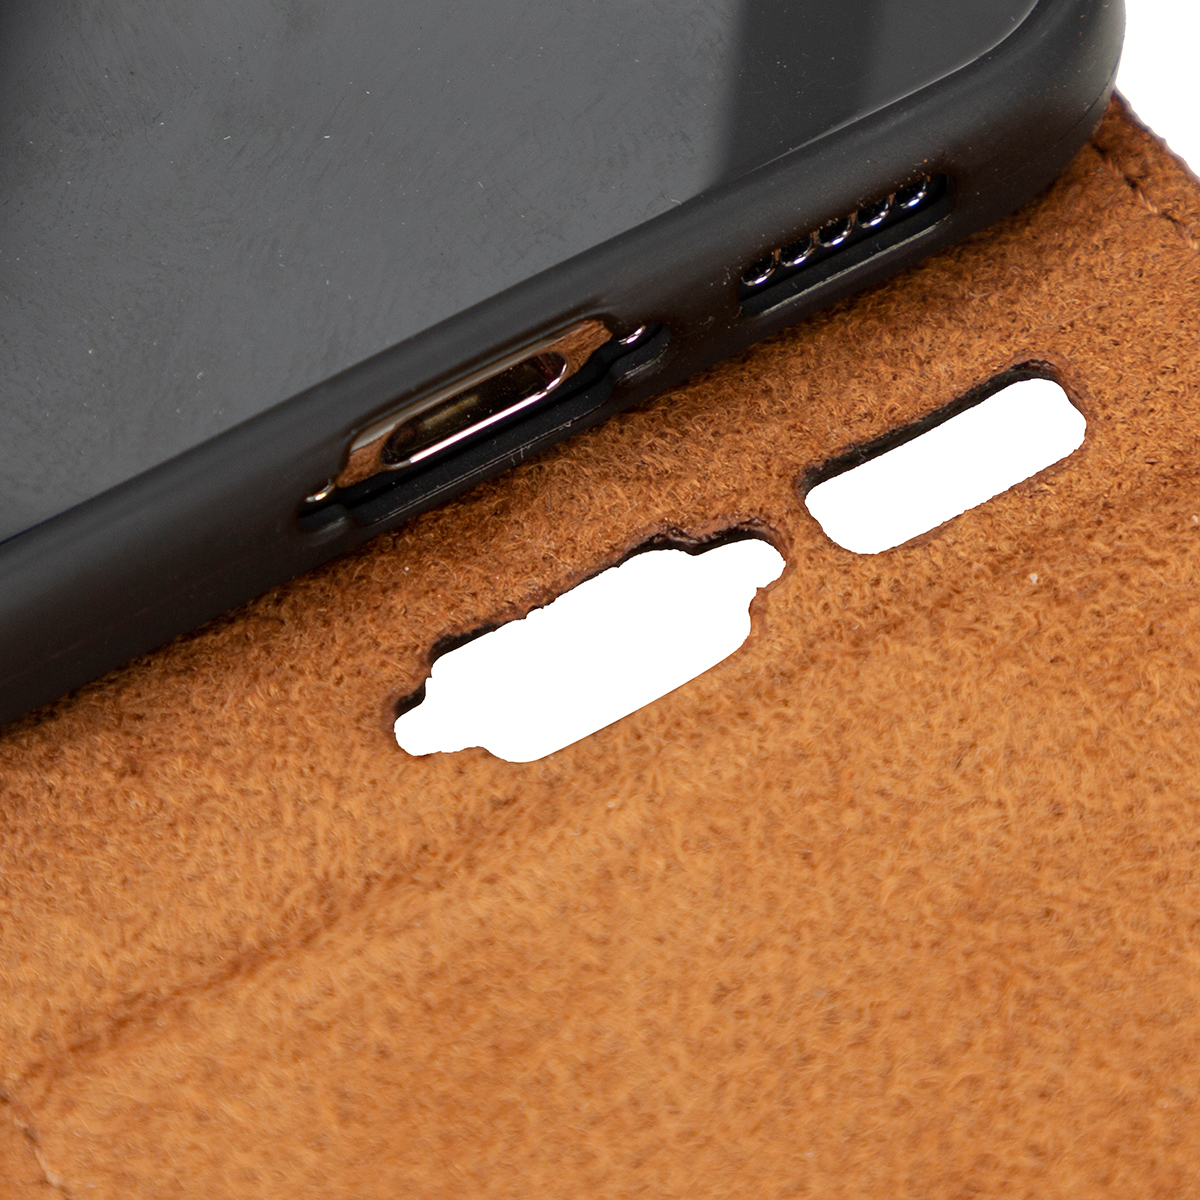 Sattelbraun Samsung, Cover, Galaxy BURKLEY Flip-Case S23 Plus, aus Flip Leder, Handytasche